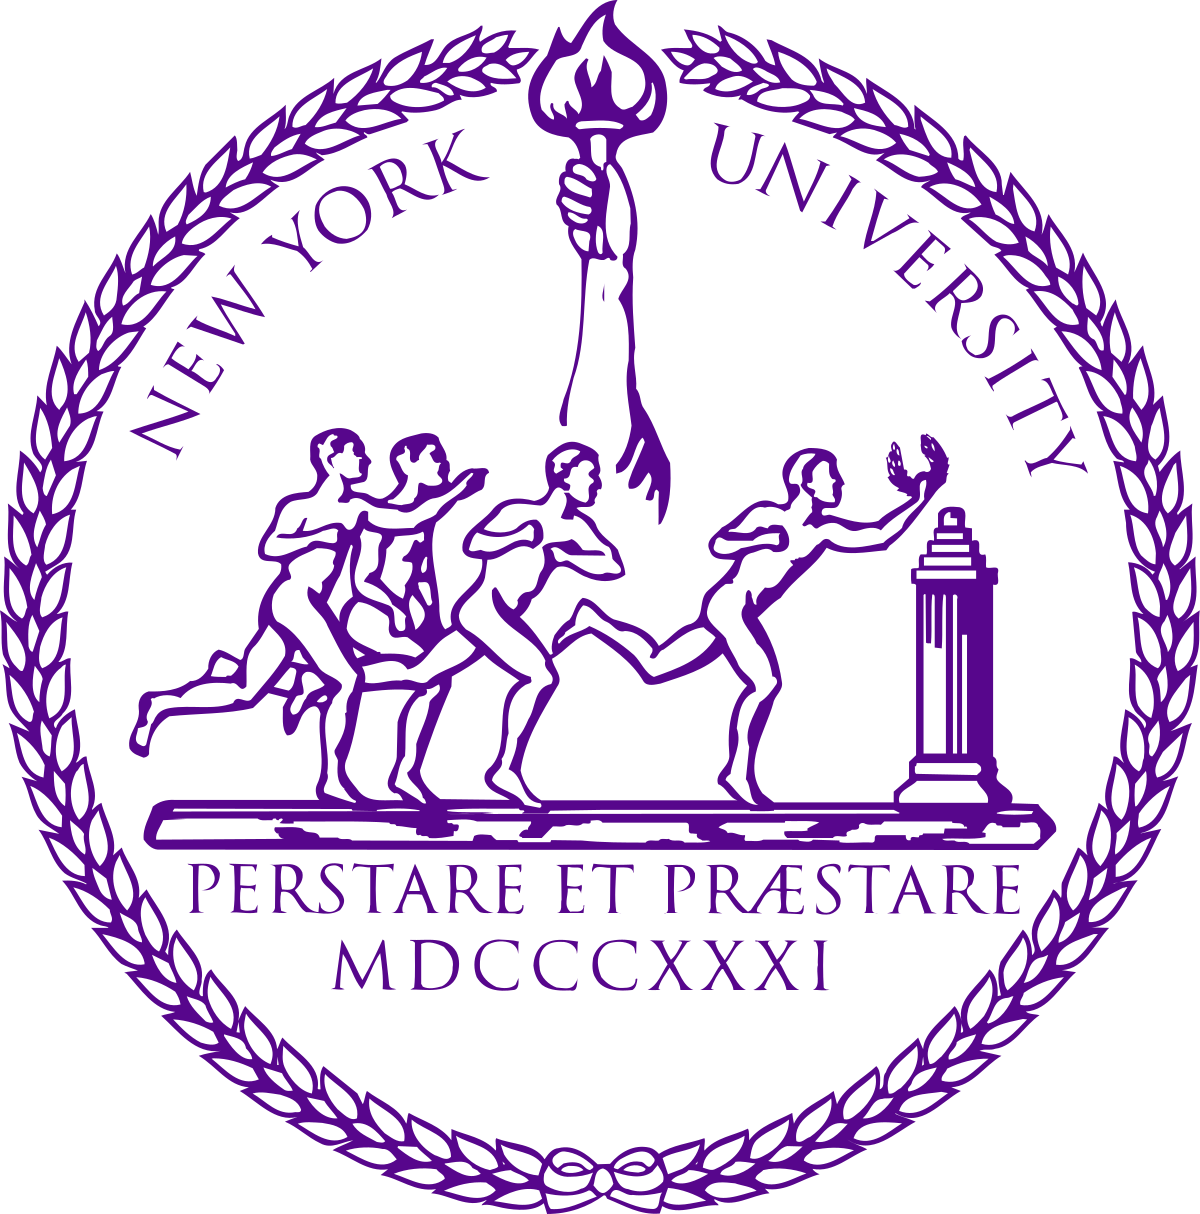 NYU Logo - New York University